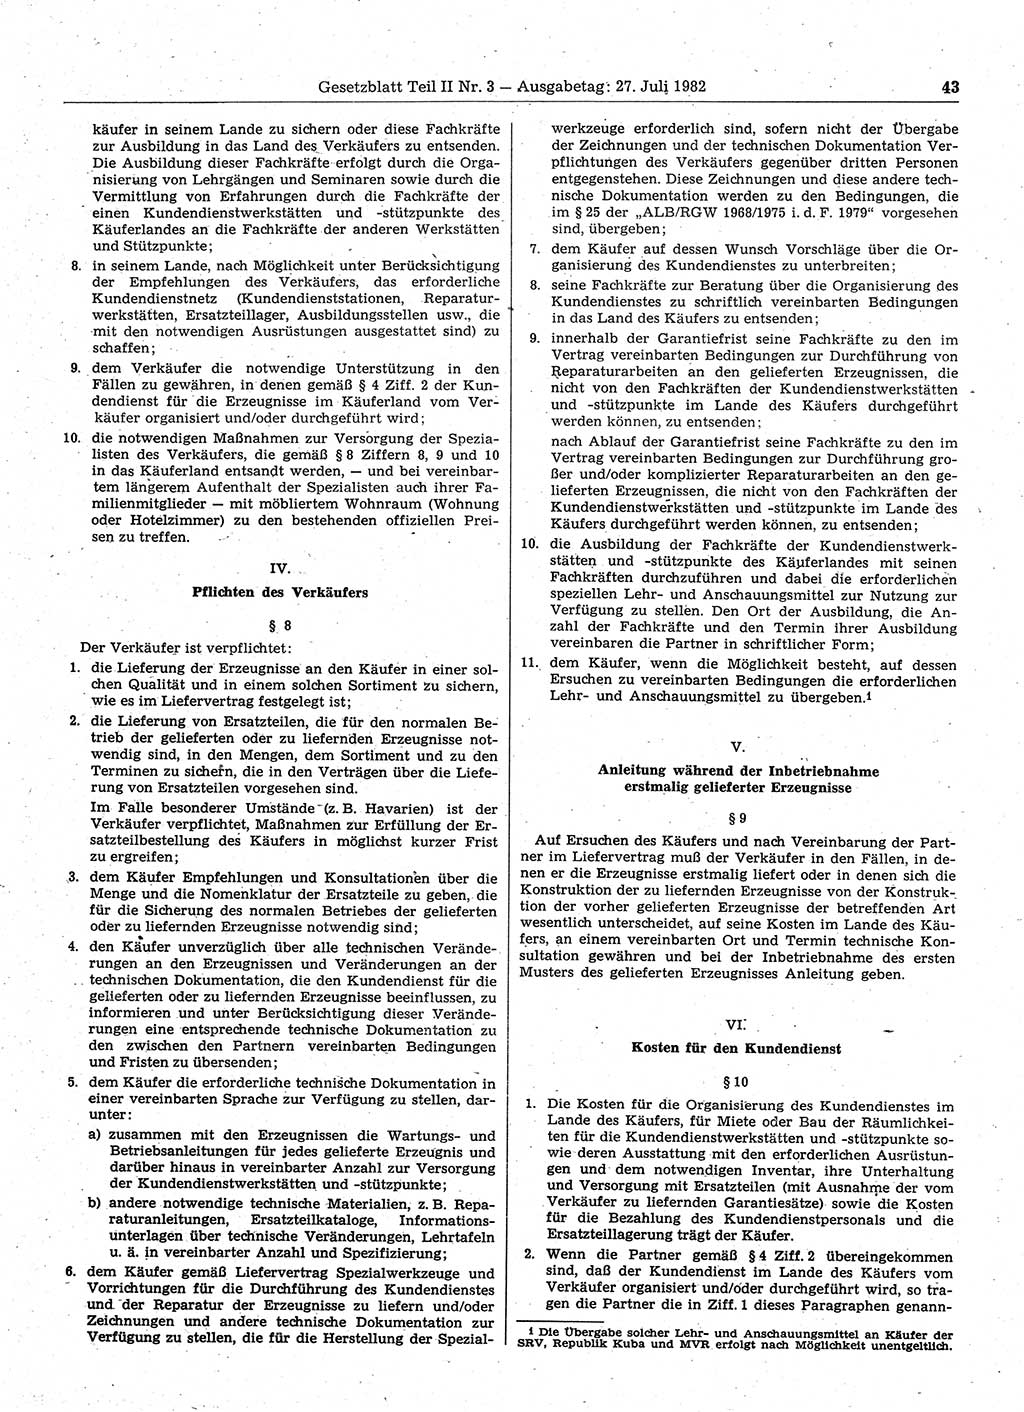 Gesetzblatt (GBl.) der Deutschen Demokratischen Republik (DDR) Teil ⅠⅠ 1982, Seite 43 (GBl. DDR ⅠⅠ 1982, S. 43)